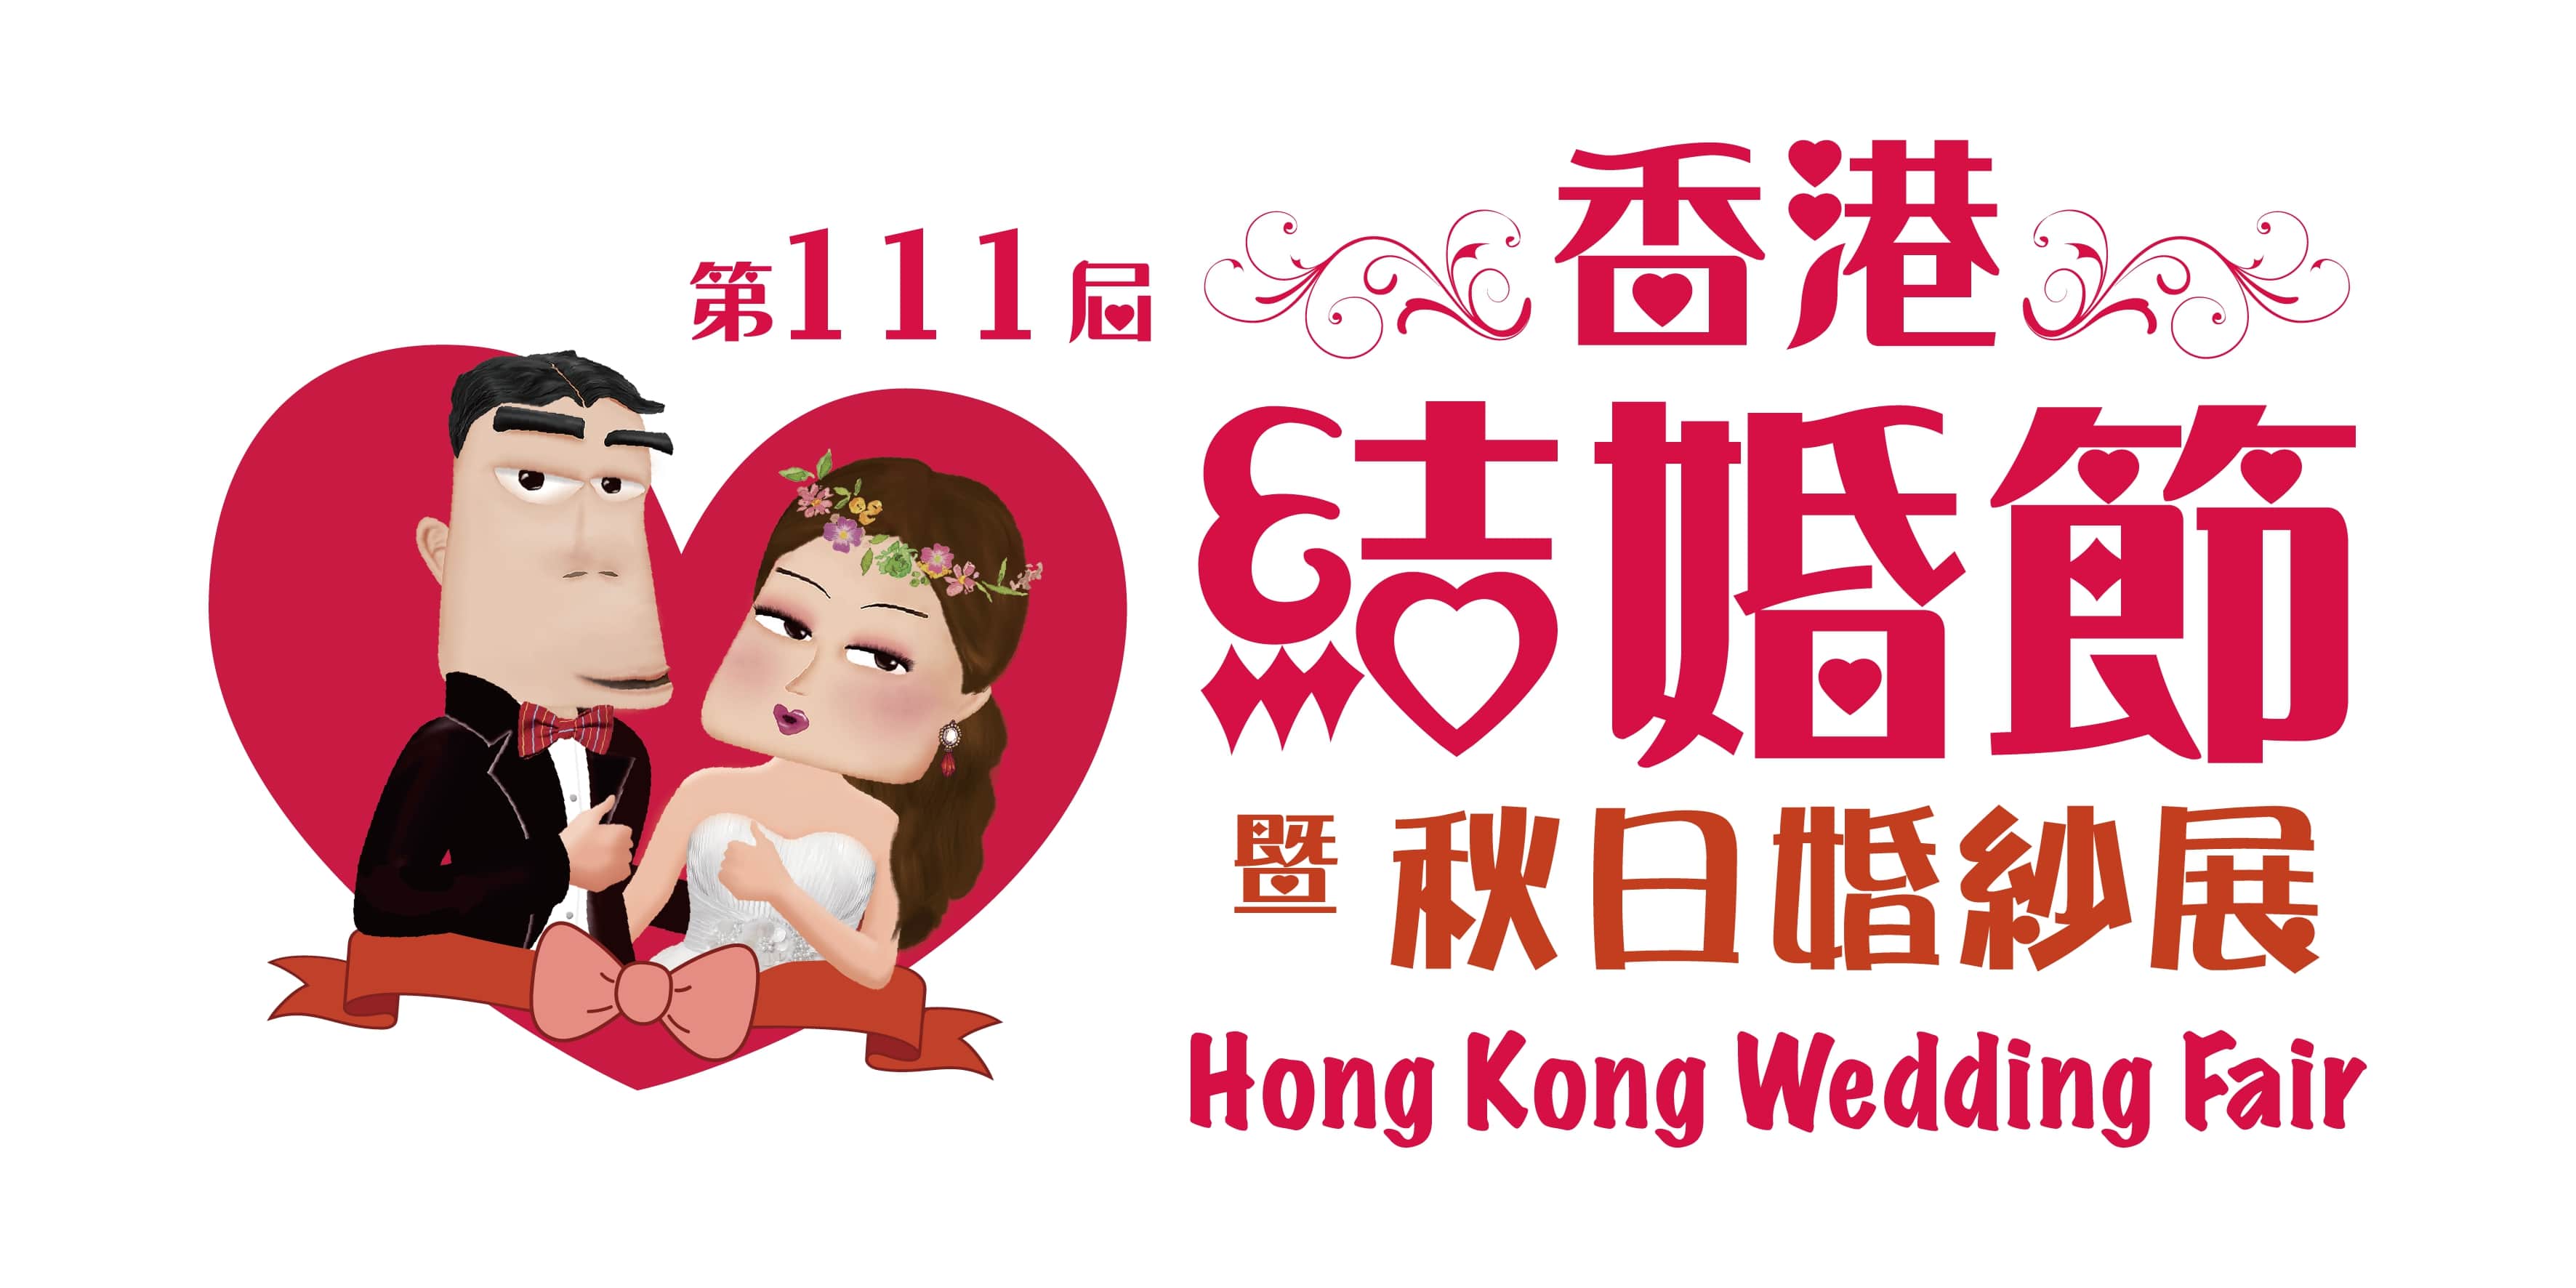 第112屆香港結婚節暨聖誕婚紗展